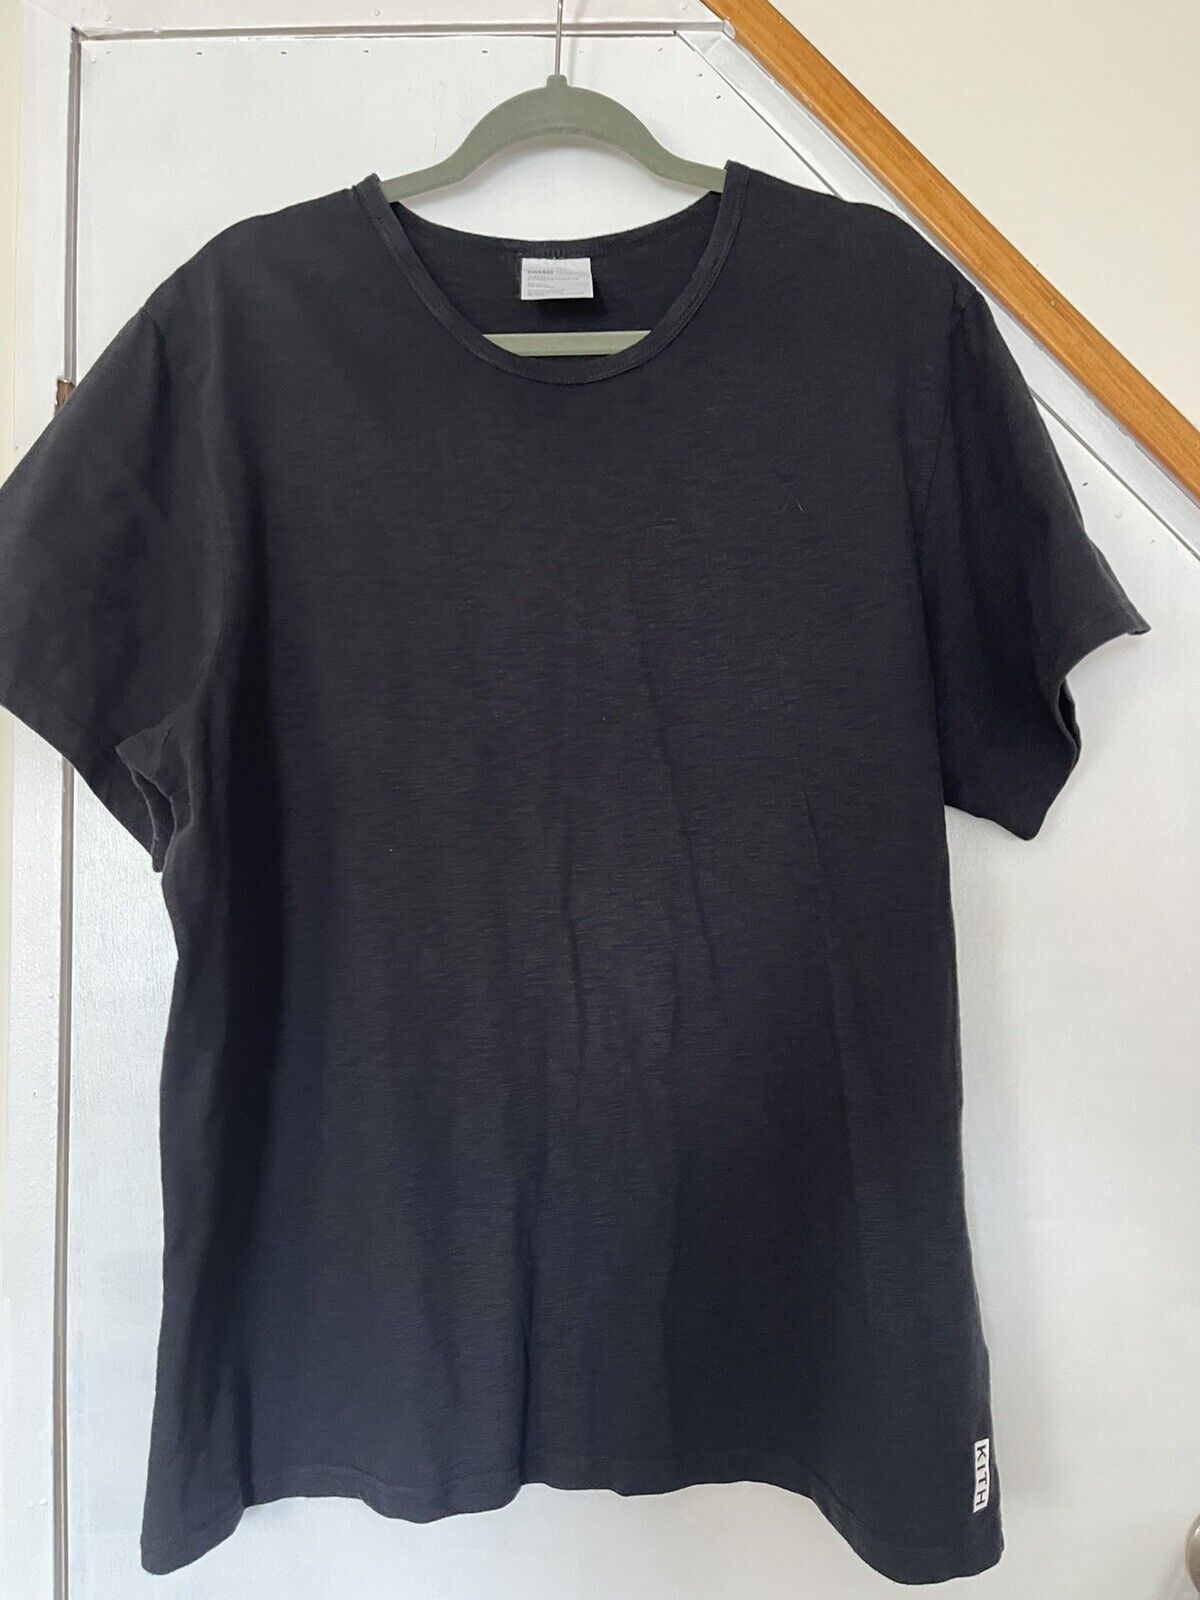 KITH T-Shirt XL - Gem